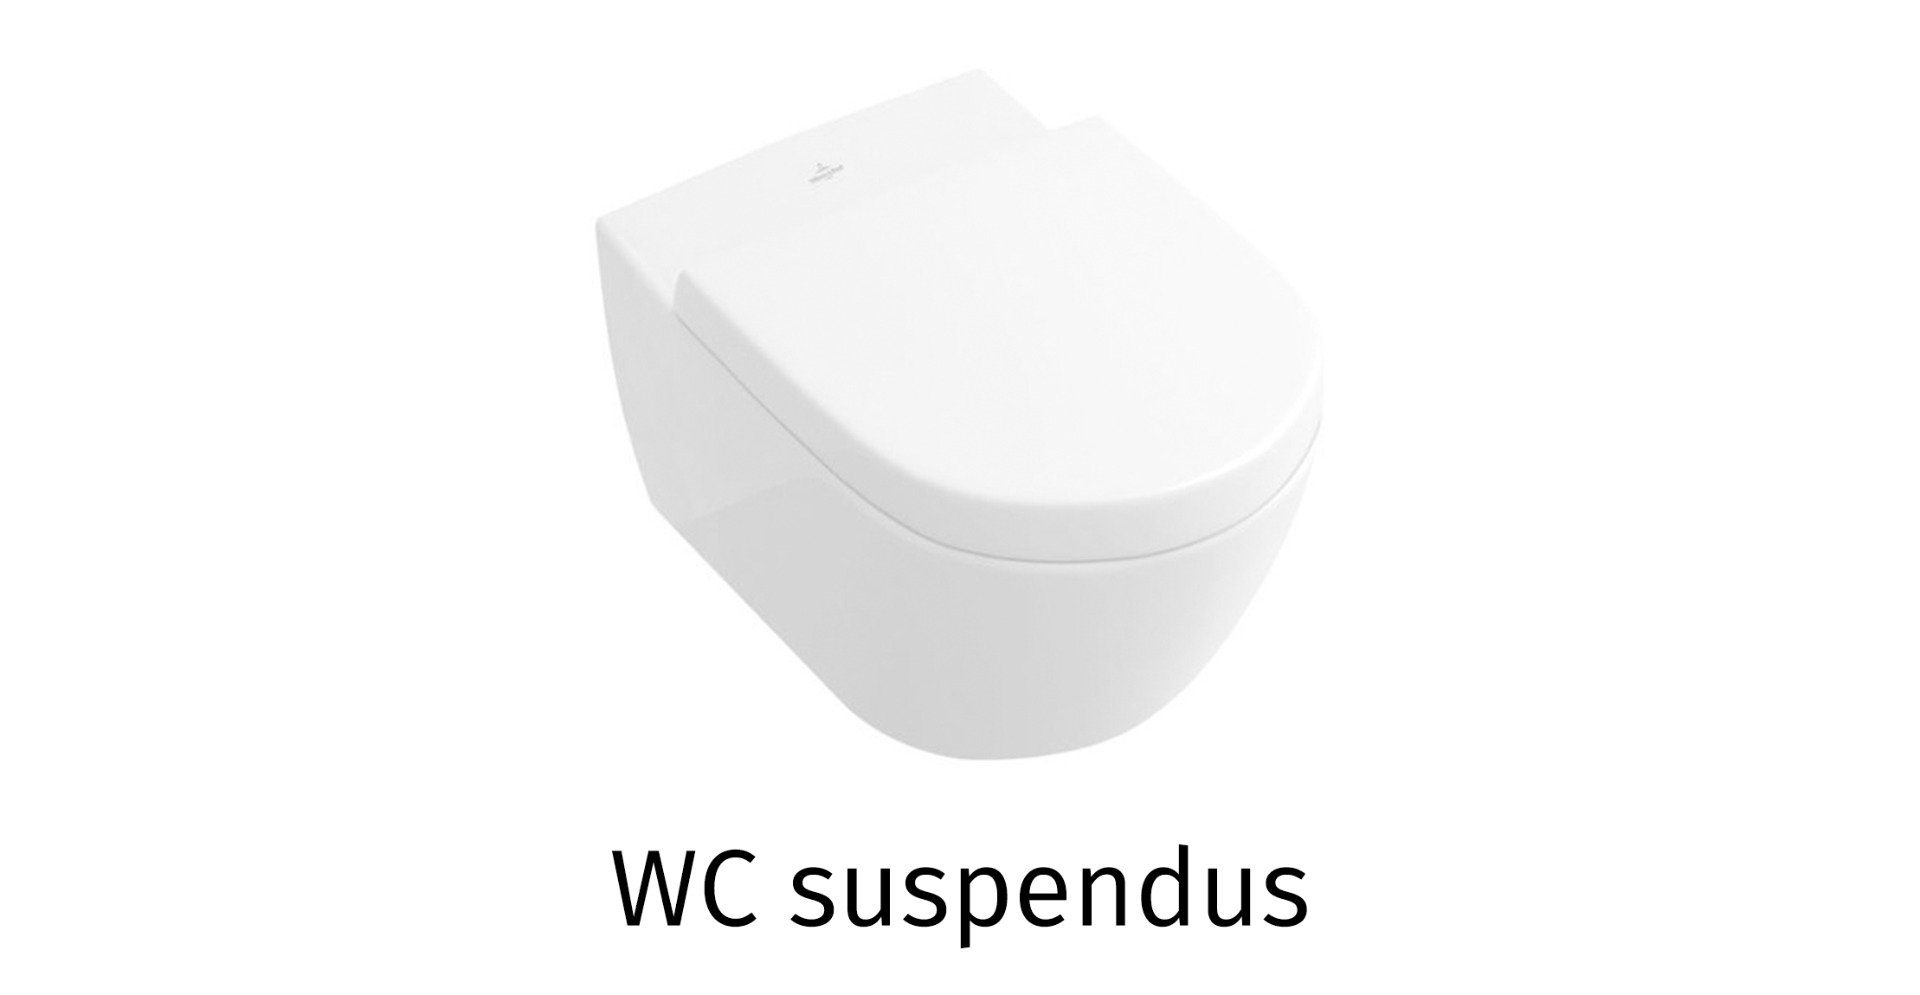 WCs suspendus